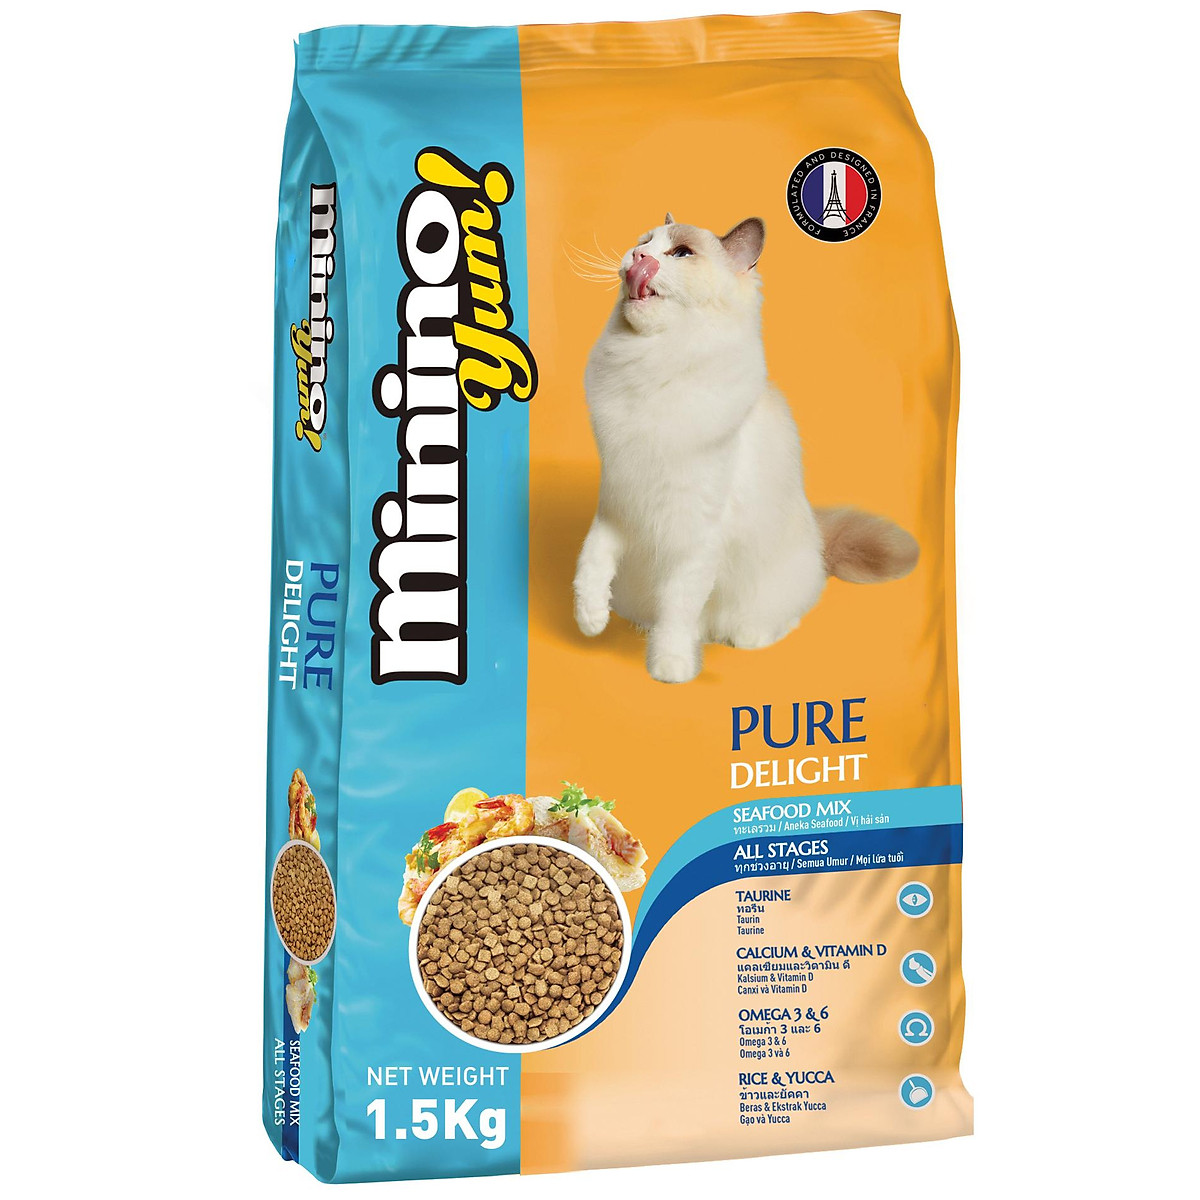 Bạn đang tìm kiếm một thức ăn ngon cho thú cưng của mình? Hãy thử dòng thức ăn Minino Yum cho mèo cực kỳ hấp dẫn và dinh dưỡng. Đừng bỏ lỡ hình ảnh của những chú mèo thưởng thức bữa ăn đầy ngon miệng này.